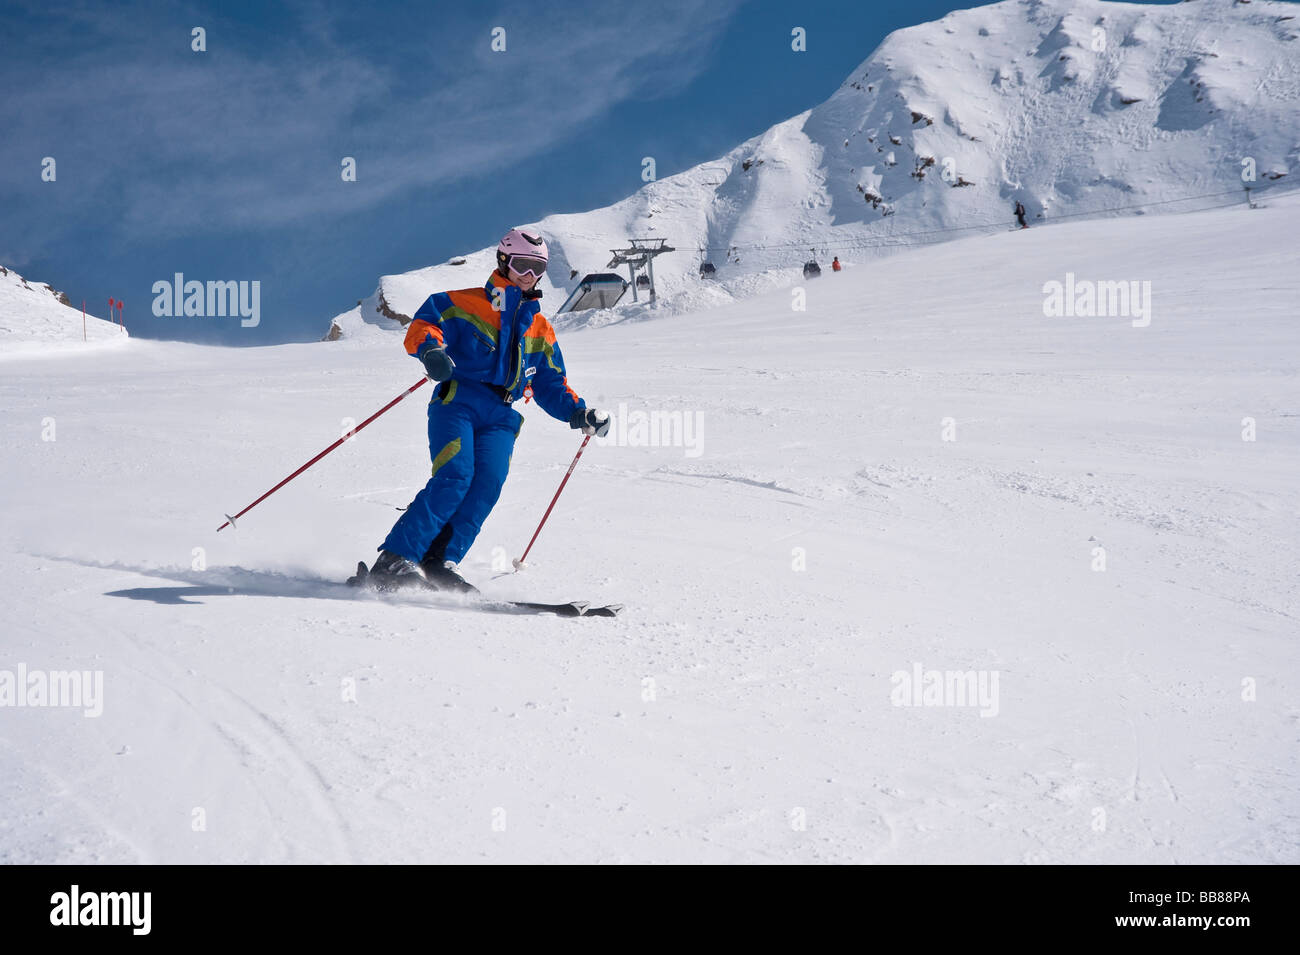 Skifahrerin mit Helm auf ski laufen, Schi, Obergurgl, Hochgurgl,  Ötztal-Tal, Tirol, Österreich Stockfotografie - Alamy